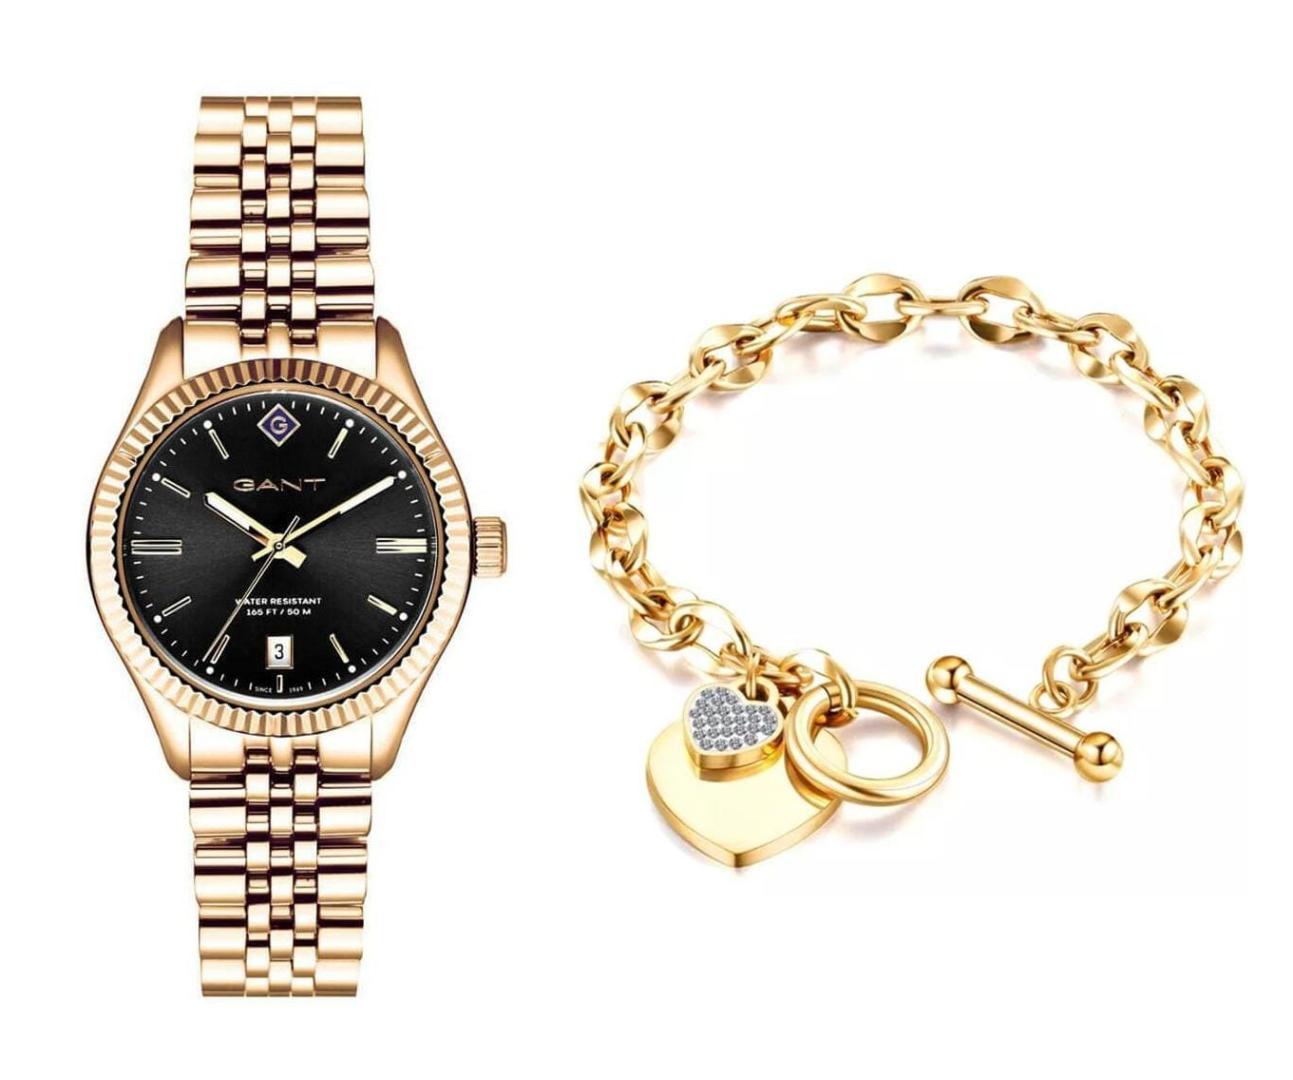 שעון יד אנלוגי לאישה gant g136012 גאנט עם צמיד לבבות